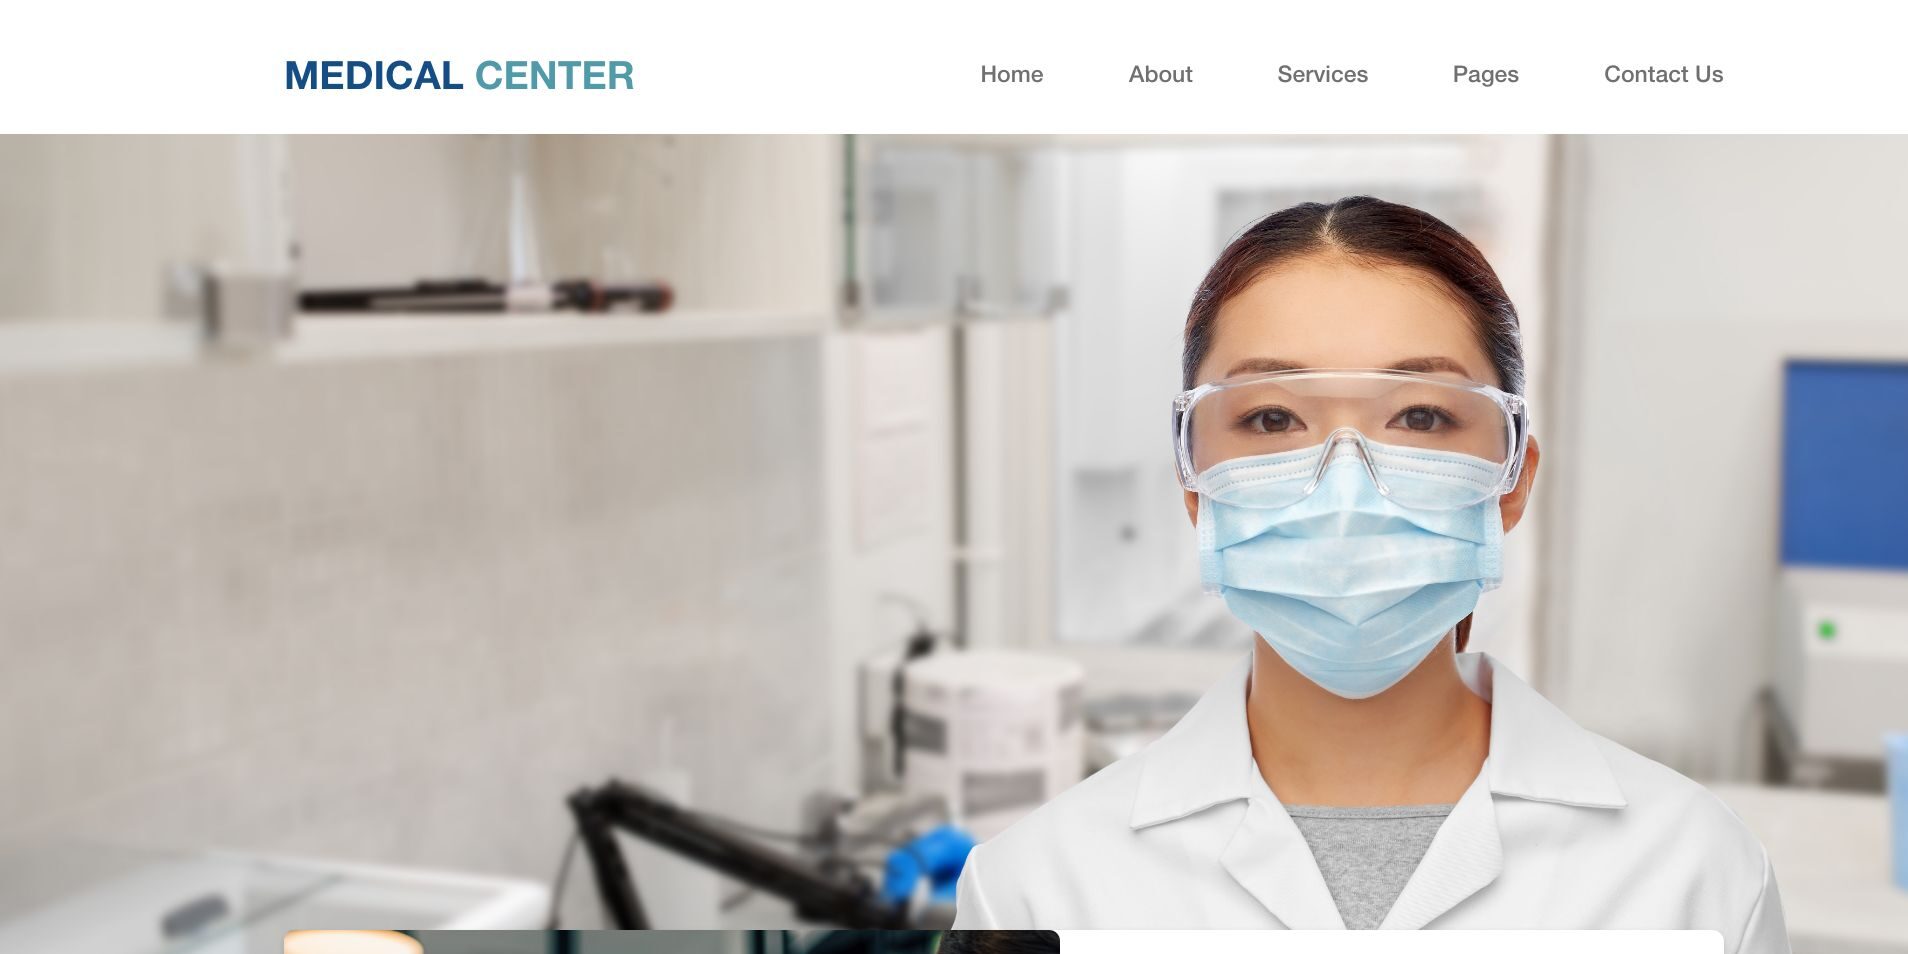 Medical Center Website Design